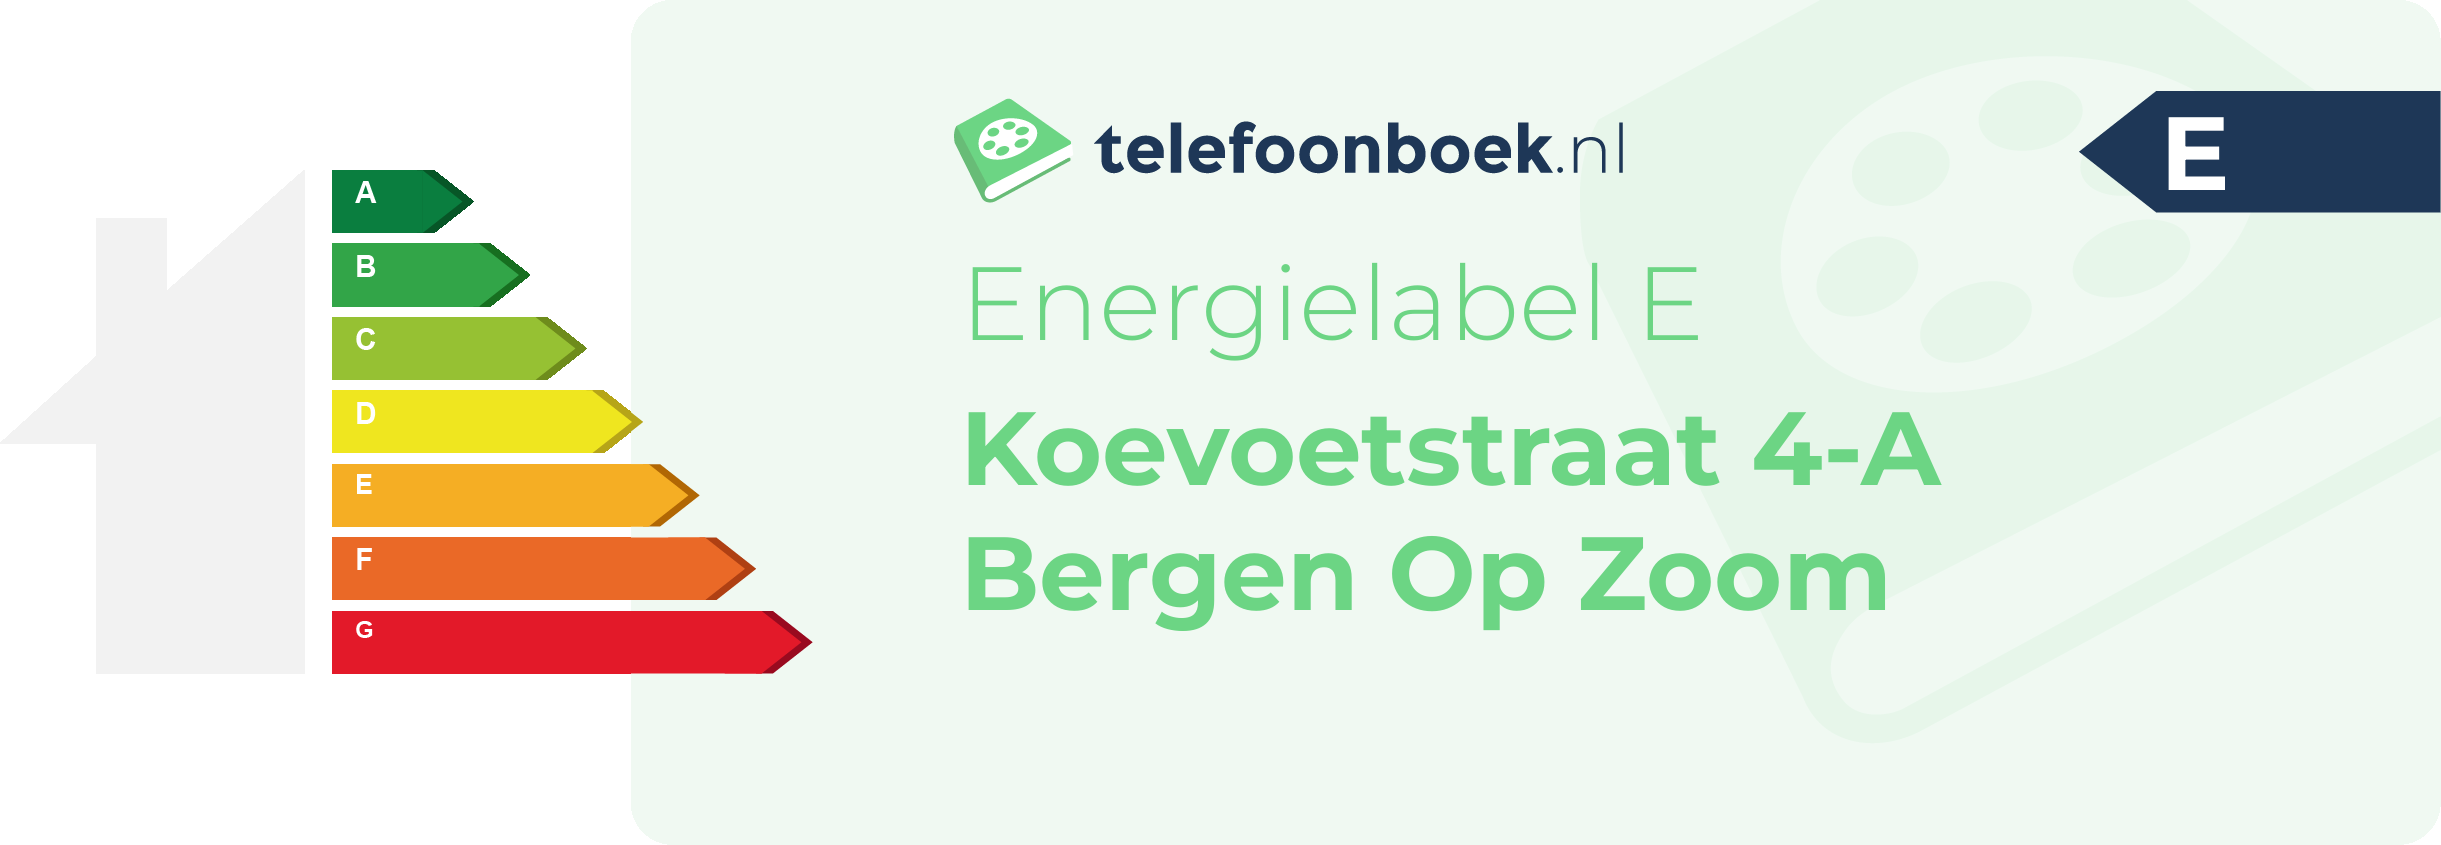 Energielabel Koevoetstraat 4-A Bergen Op Zoom